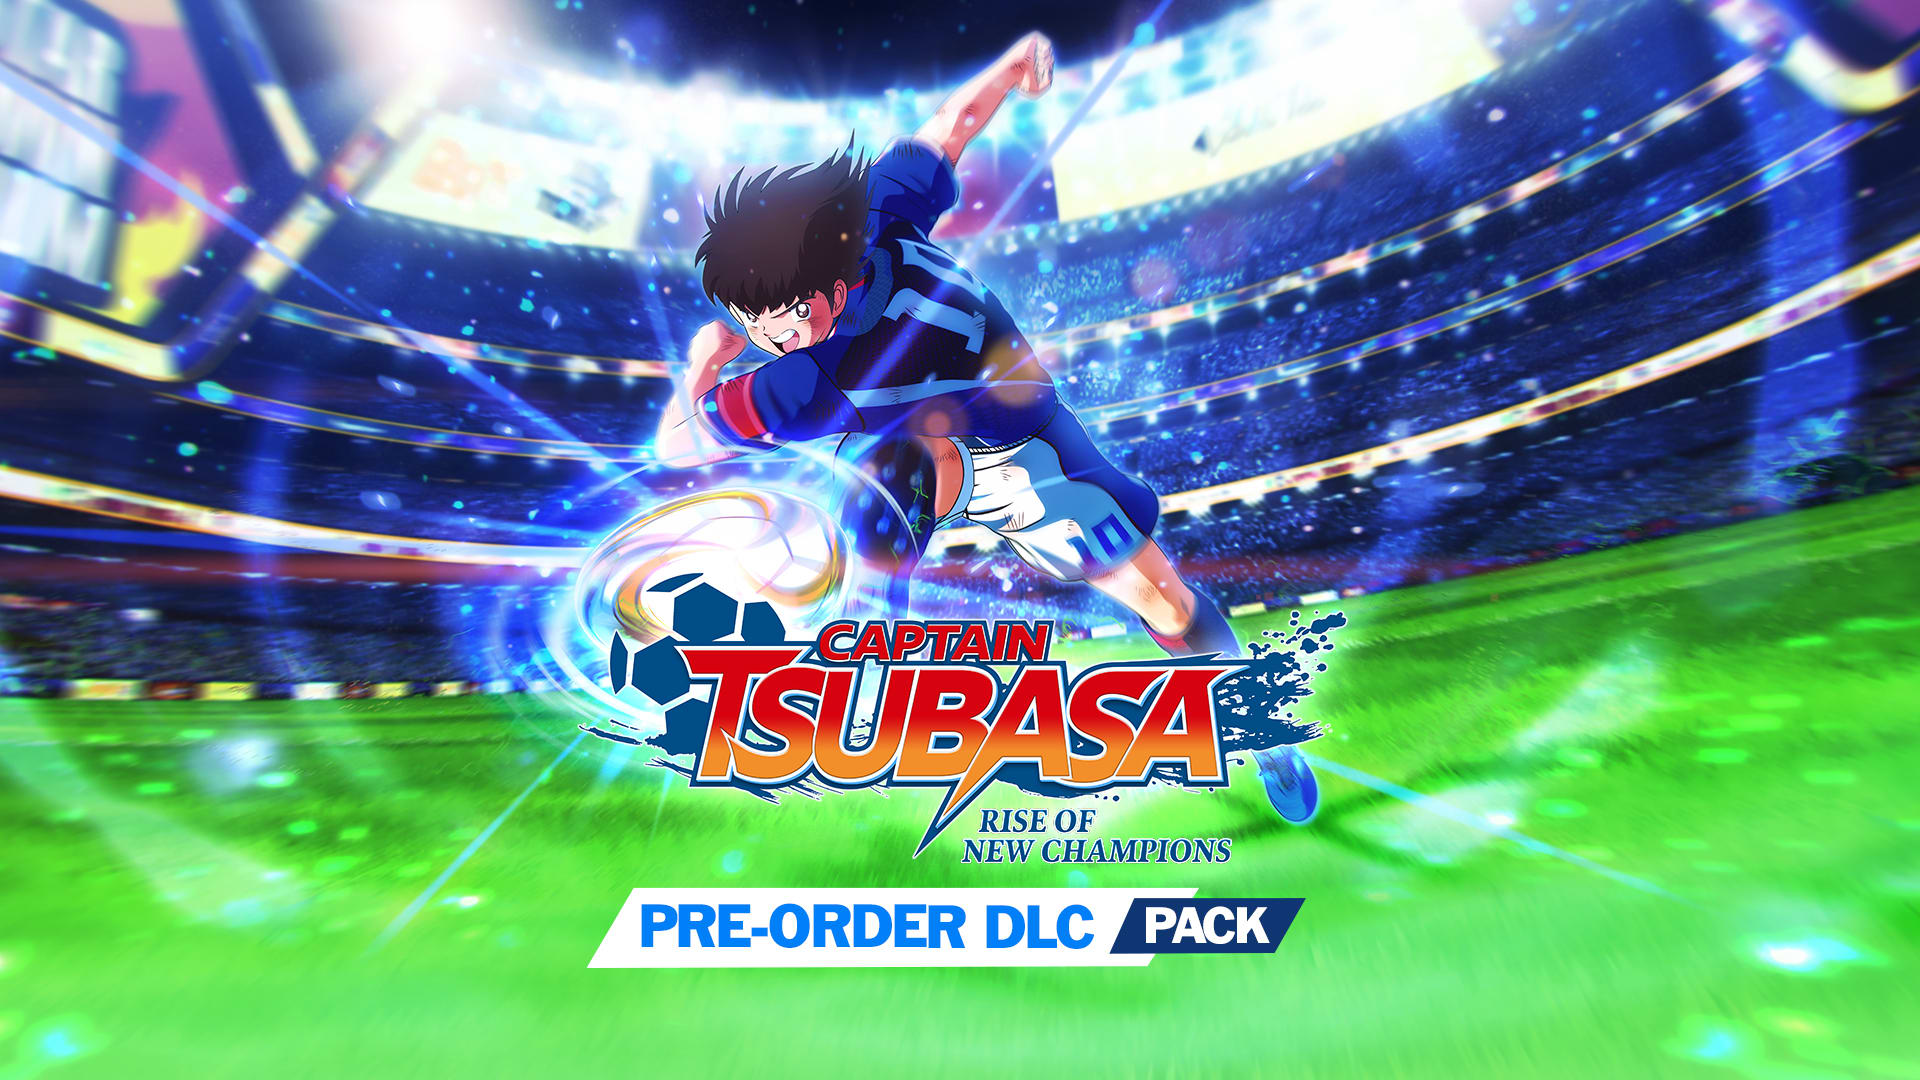 Captain Tsubasa: RoNC (con compra anticipada) - Paquete DLC